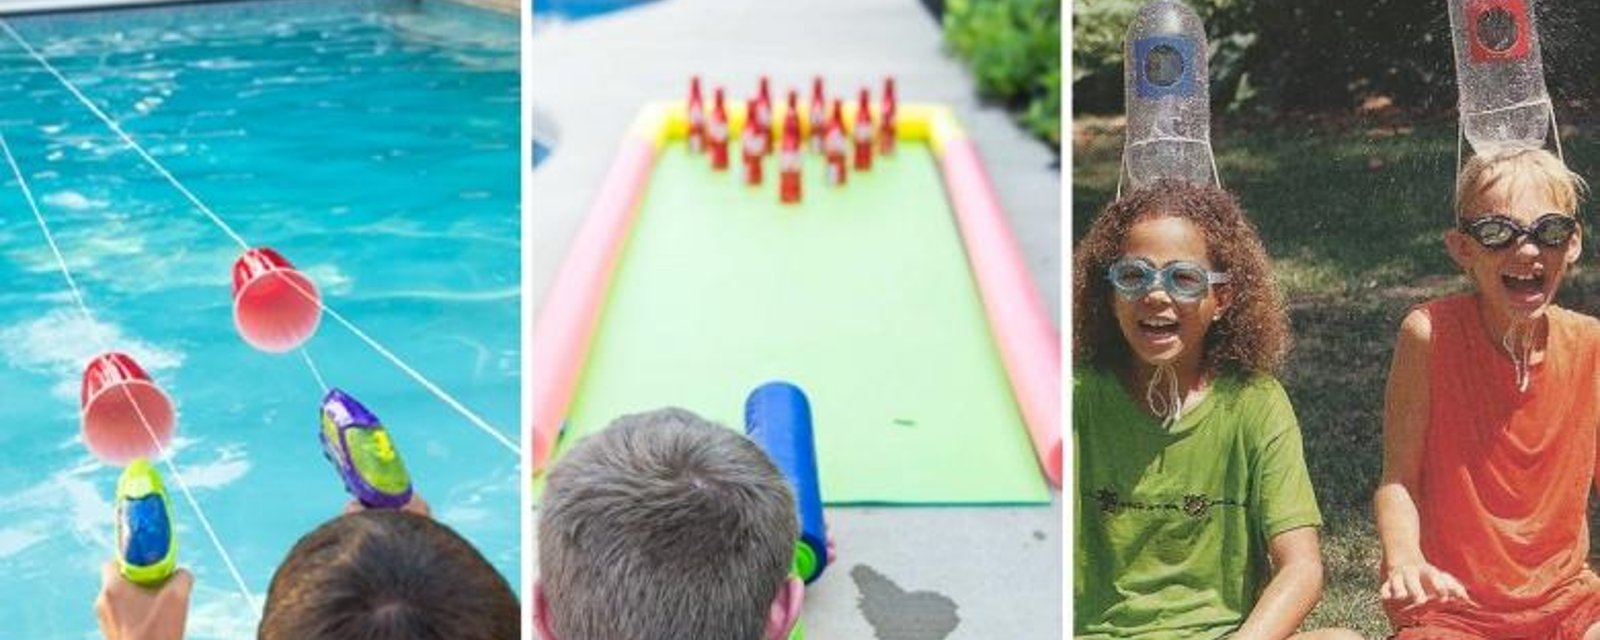 10 Jeux d'eau, trop cool à essayer avec les enfants cet été! 